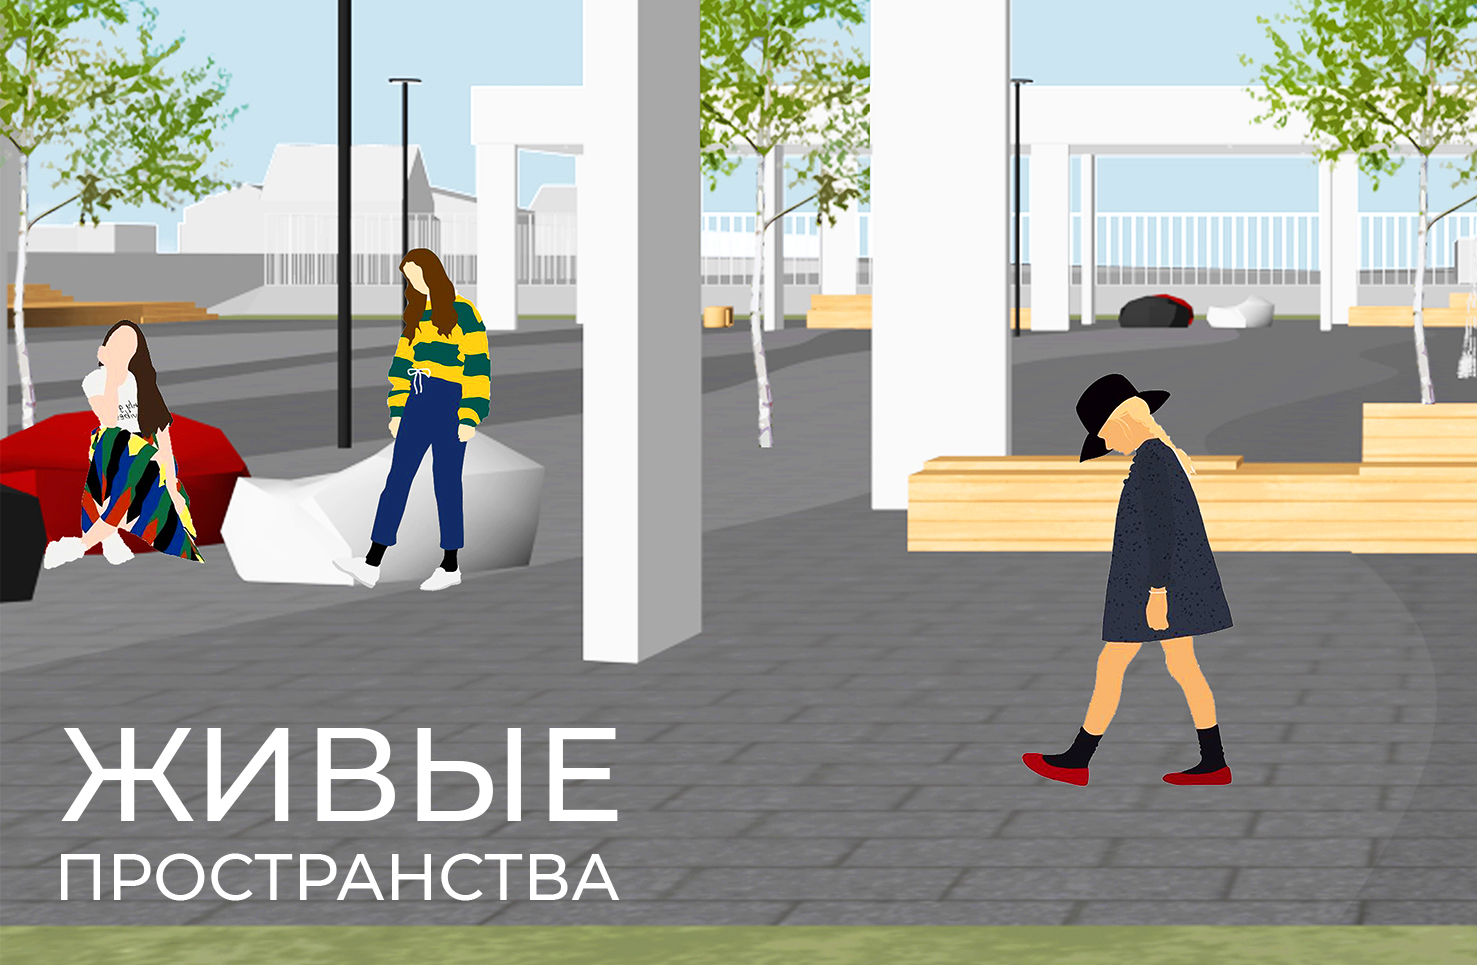 В Якутии сегодня начинается конкурс на лучший архитектурный проект благоустройства «Живые пространства»